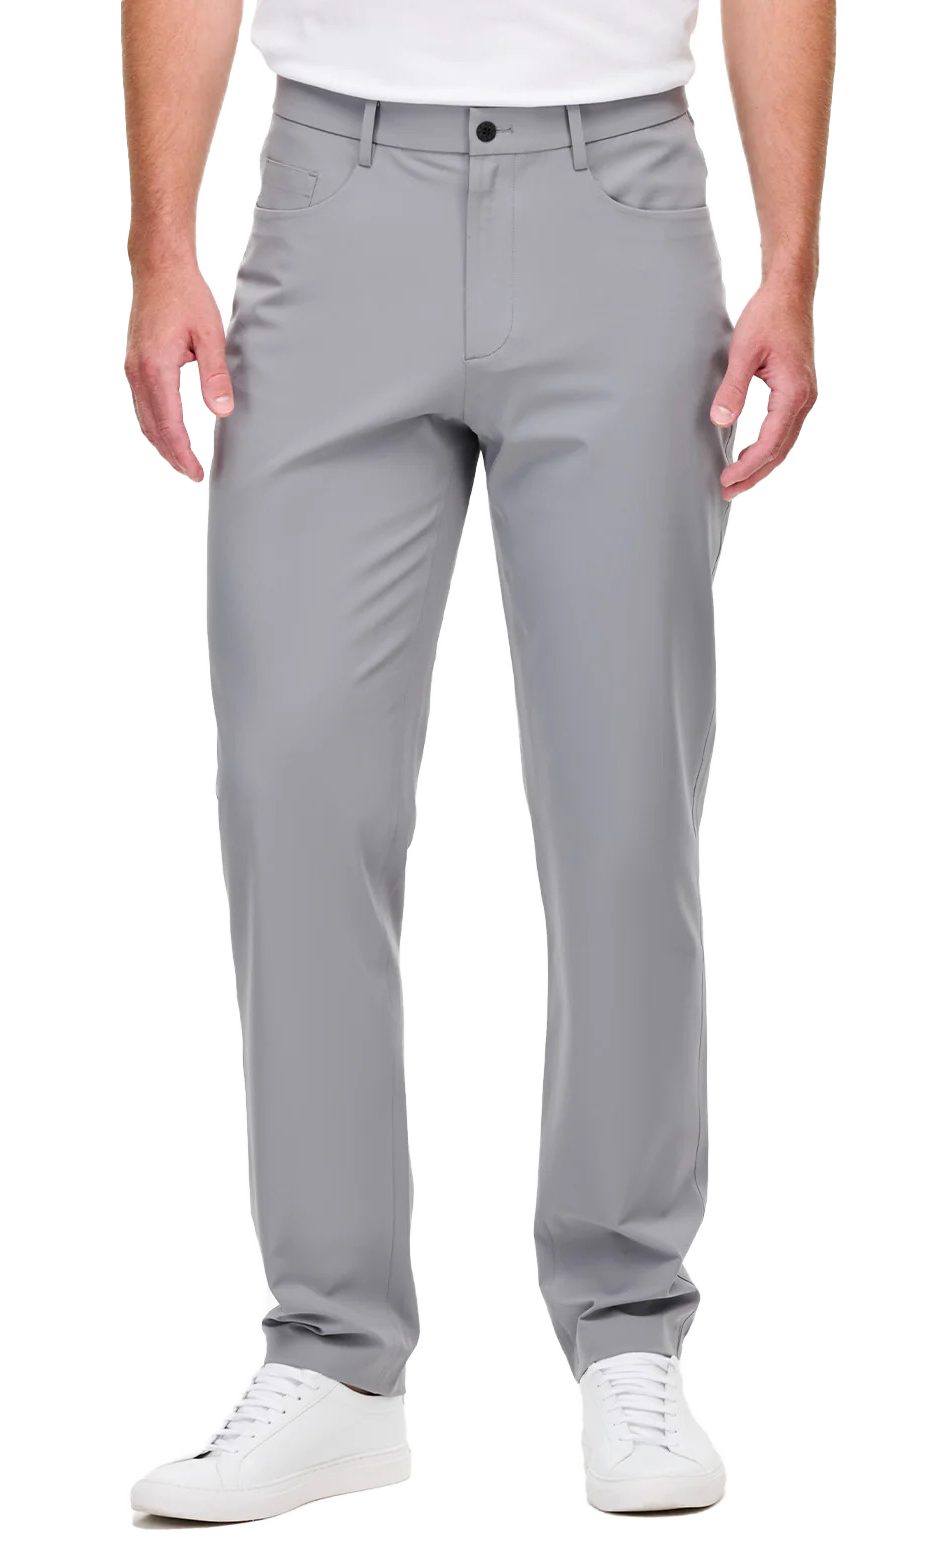 xSuit Air grey dress pants